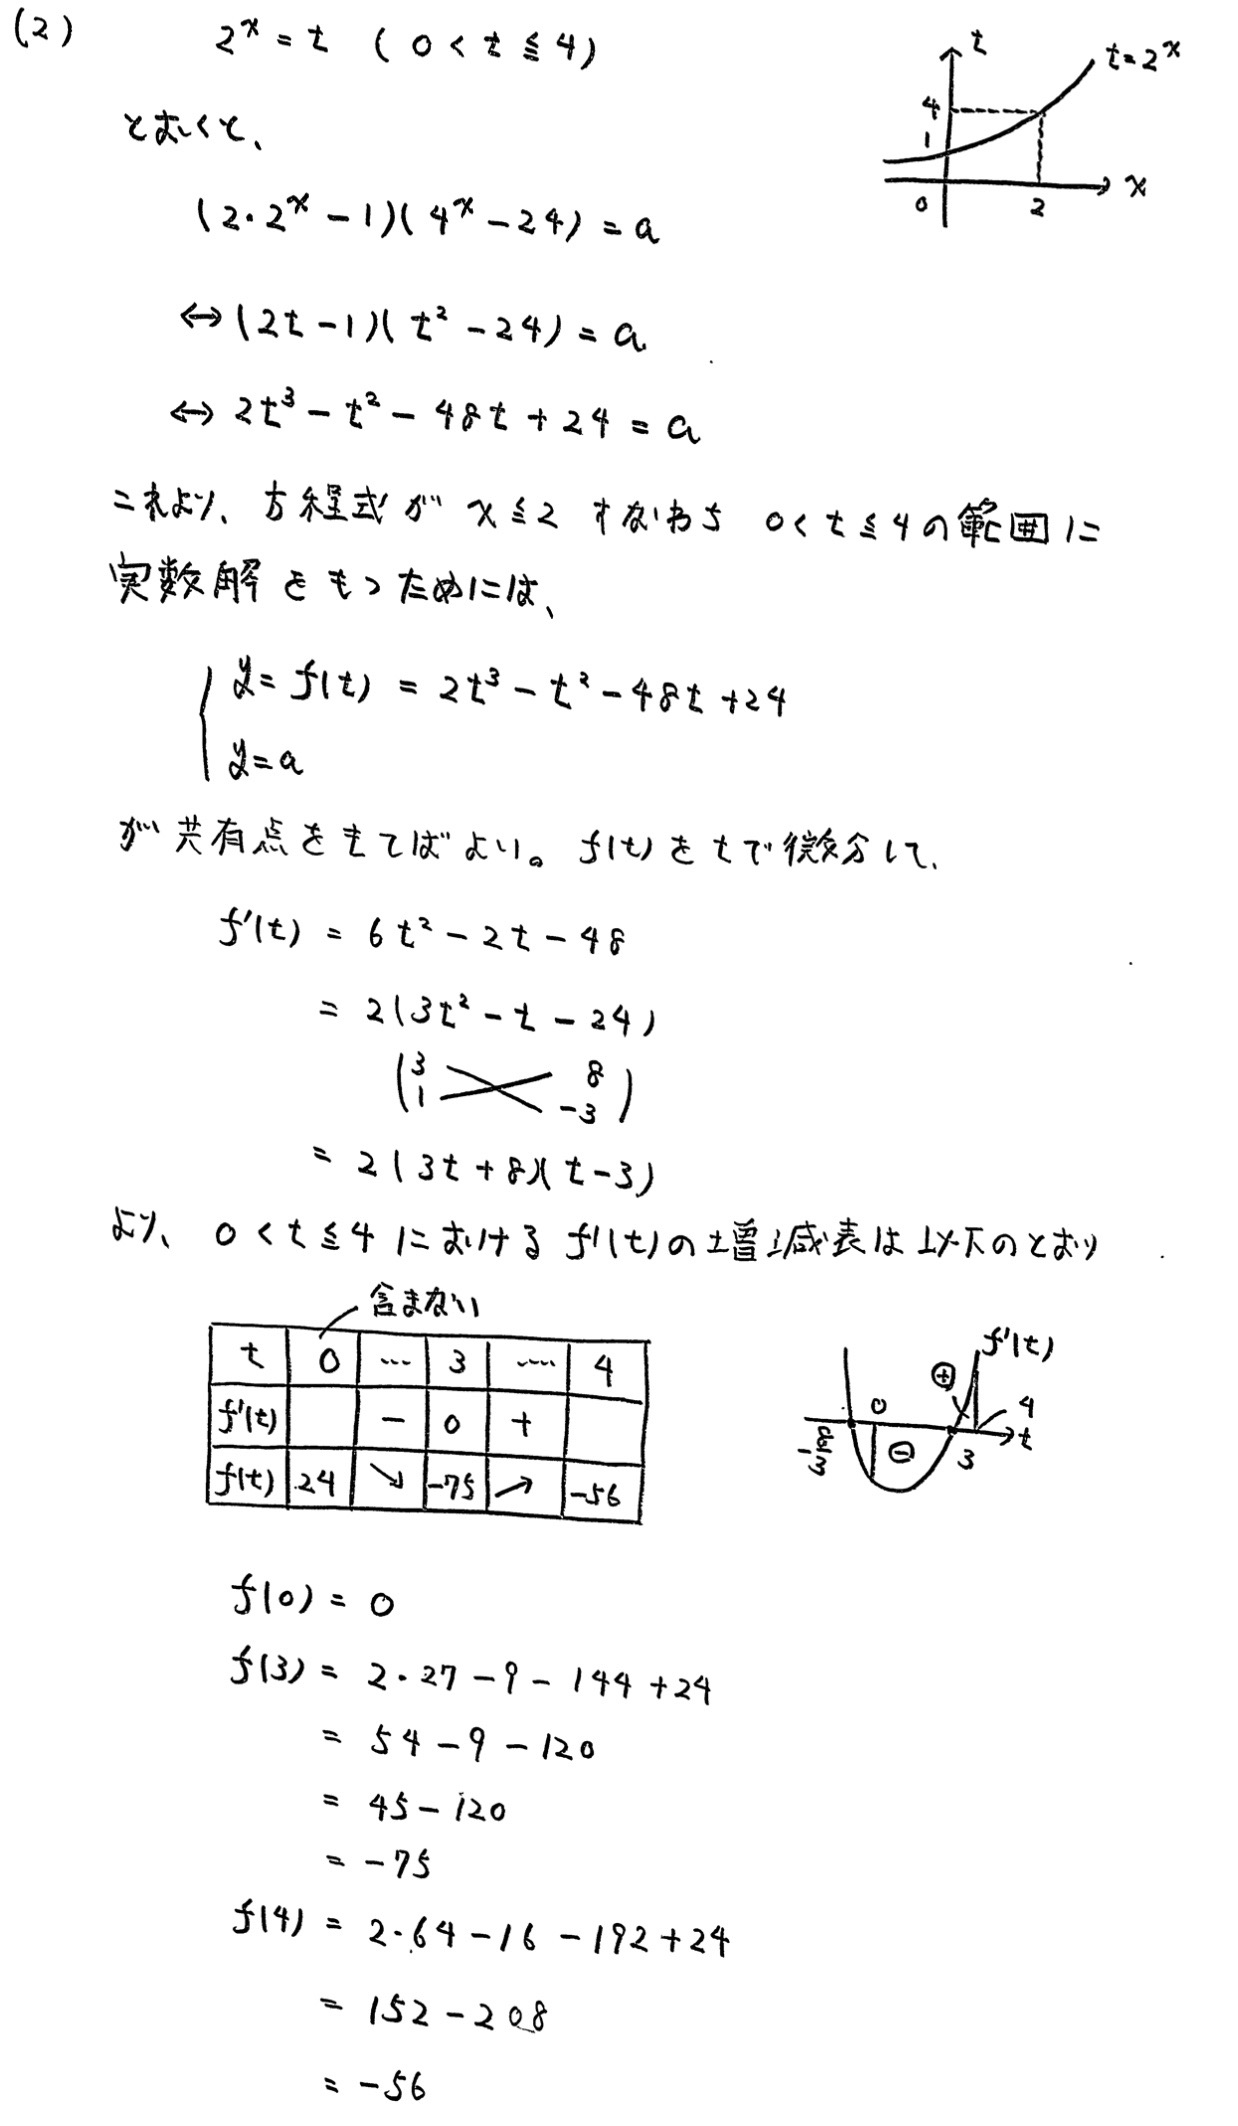 青山学院大学(全学部)文系数学(2022年)入試過去問題(解答・解説)